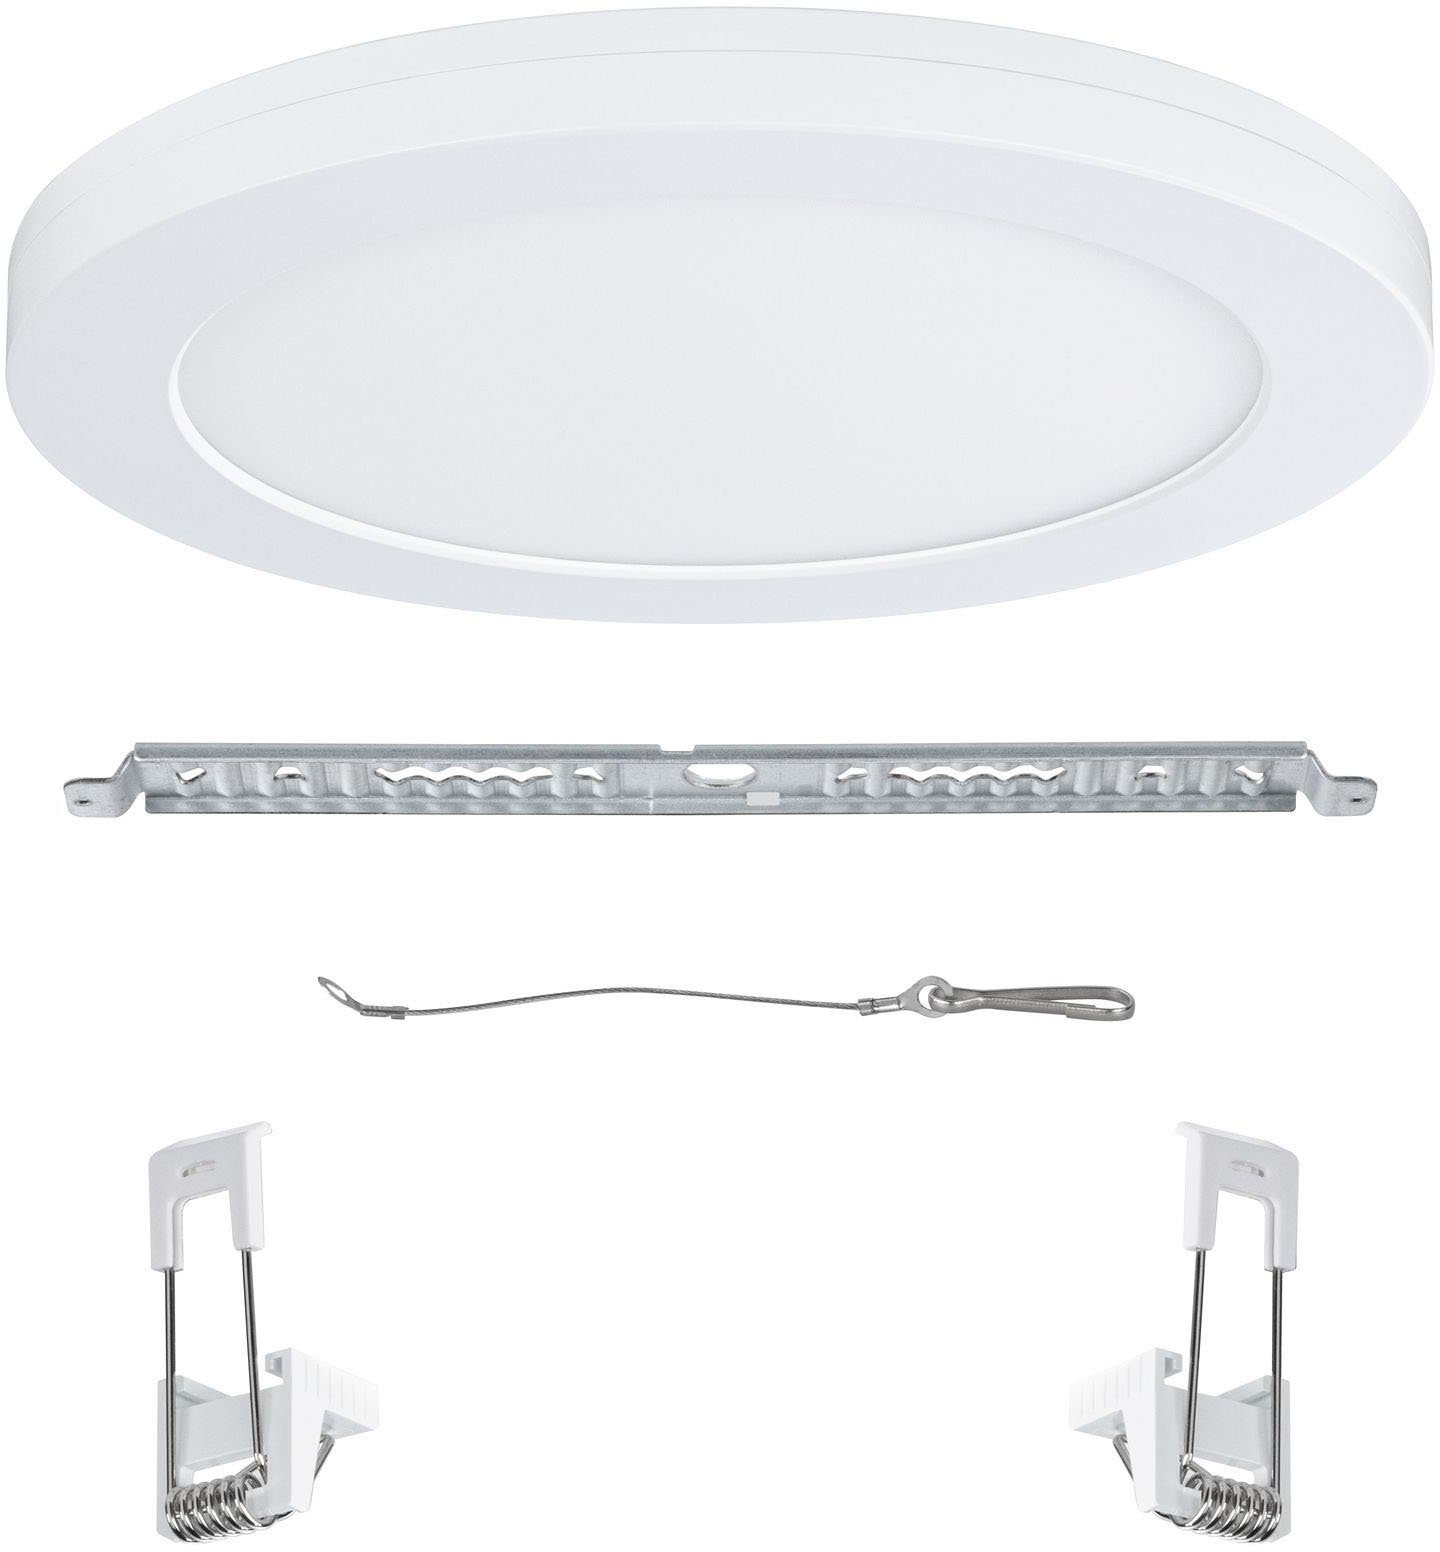 Paulmann LED Einbauleuchte fest Bewegungsmelder, integriert, Neutralweiß, LED-Modul LED Cover-it